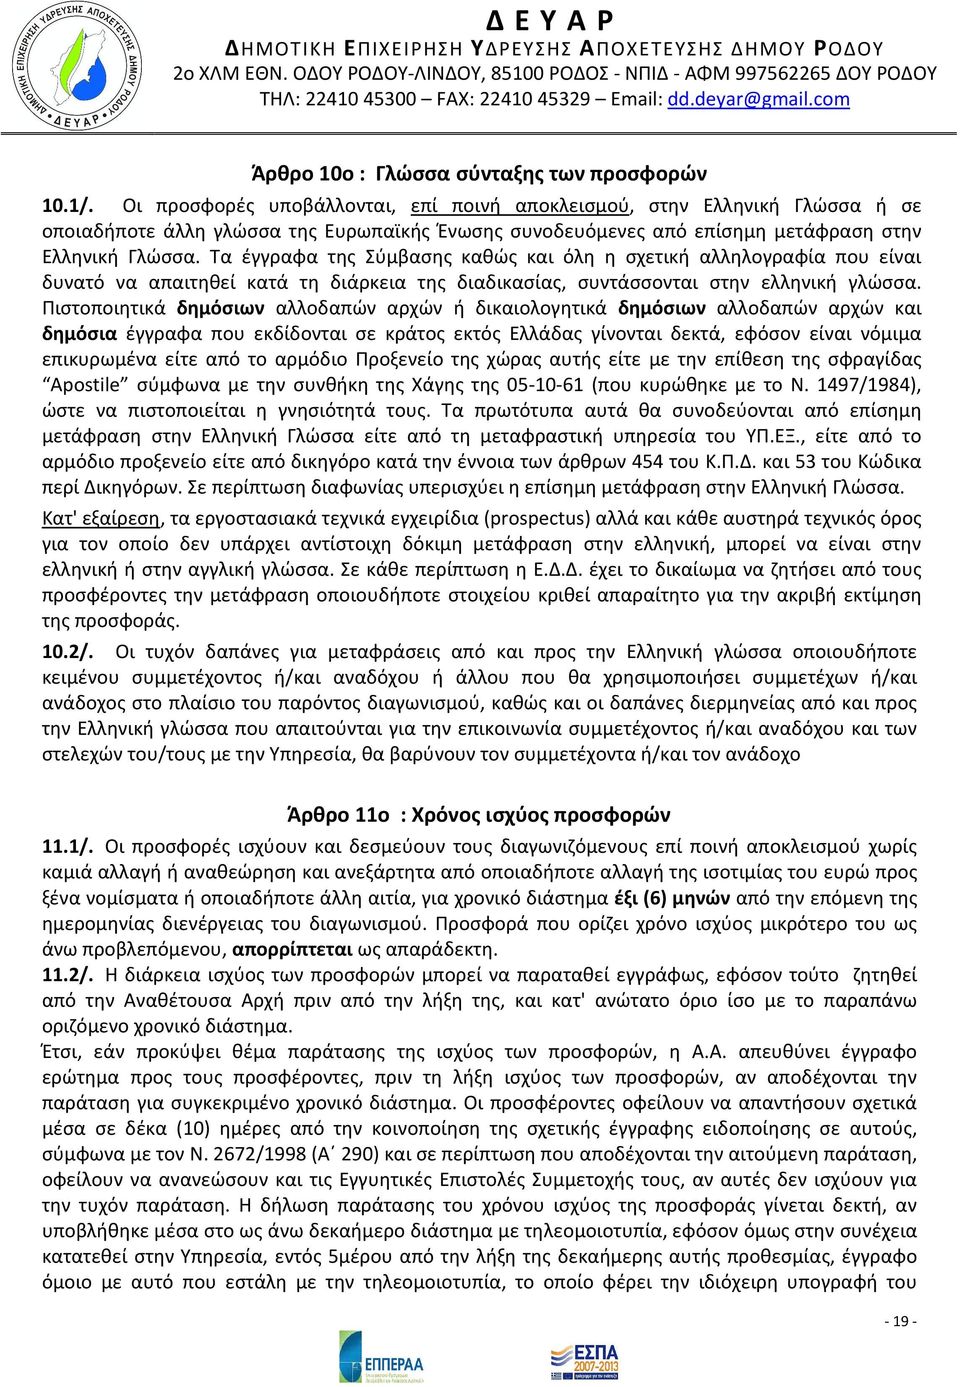 Τα έγγραφα της Σύμβασης καθώς και όλη η σχετική αλληλογραφία που είναι δυνατό να απαιτηθεί κατά τη διάρκεια της διαδικασίας, συντάσσονται στην ελληνική γλώσσα.